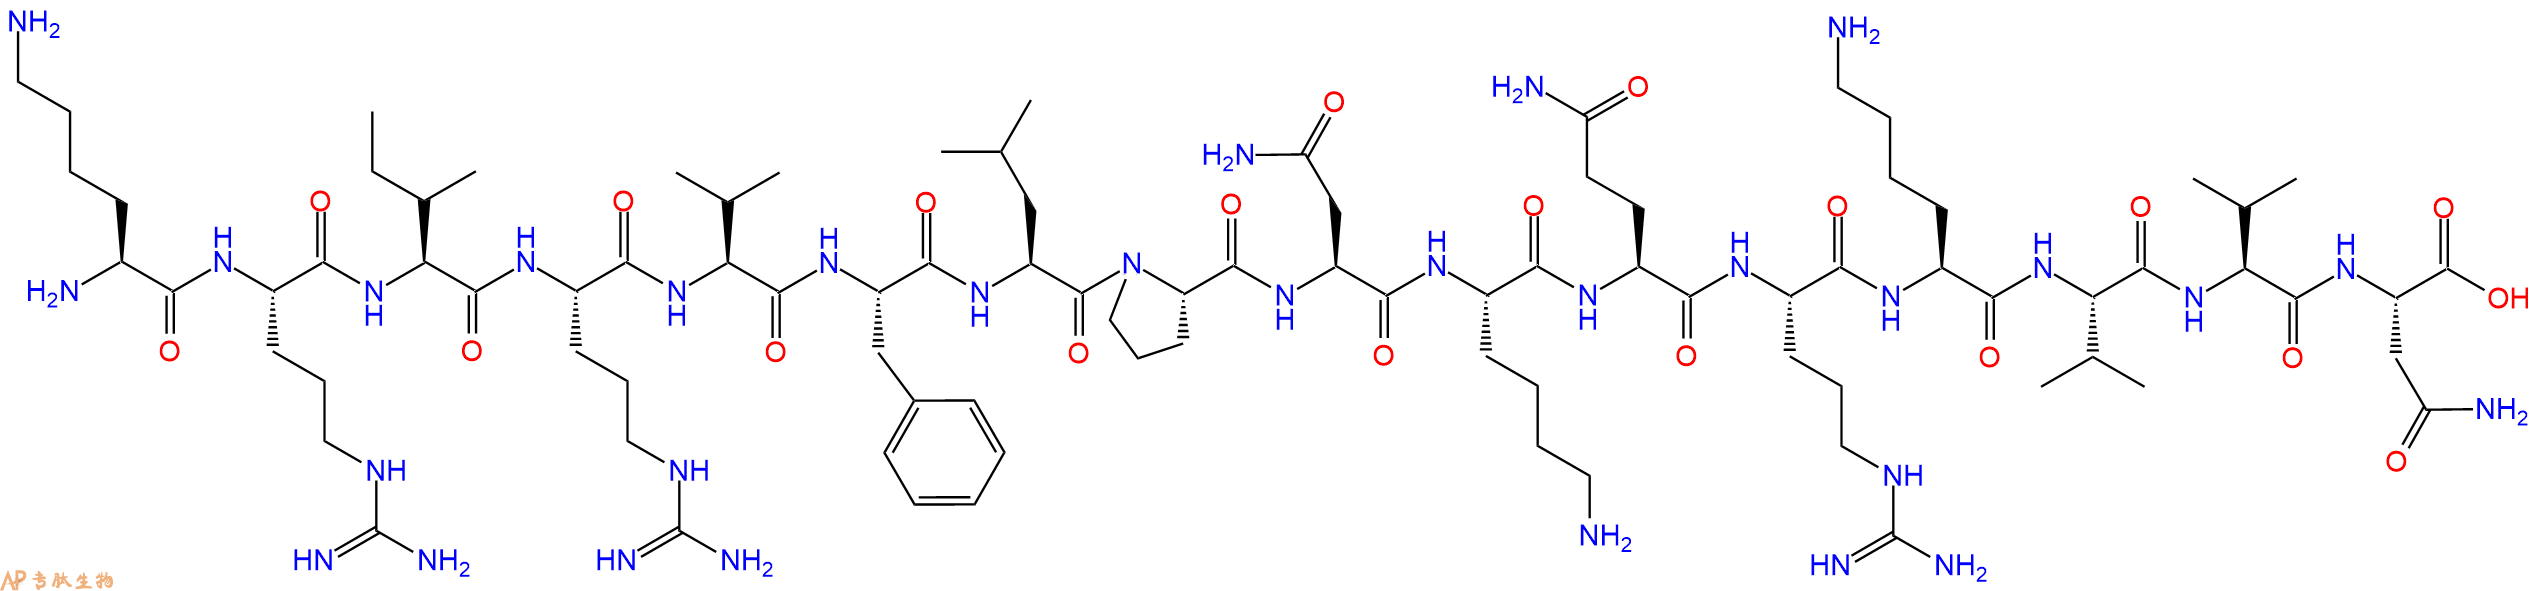 专肽生物产品H2N-Lys-Arg-Ile-Arg-Val-Phe-Leu-Pro-Asn-Lys-Gln-Ar